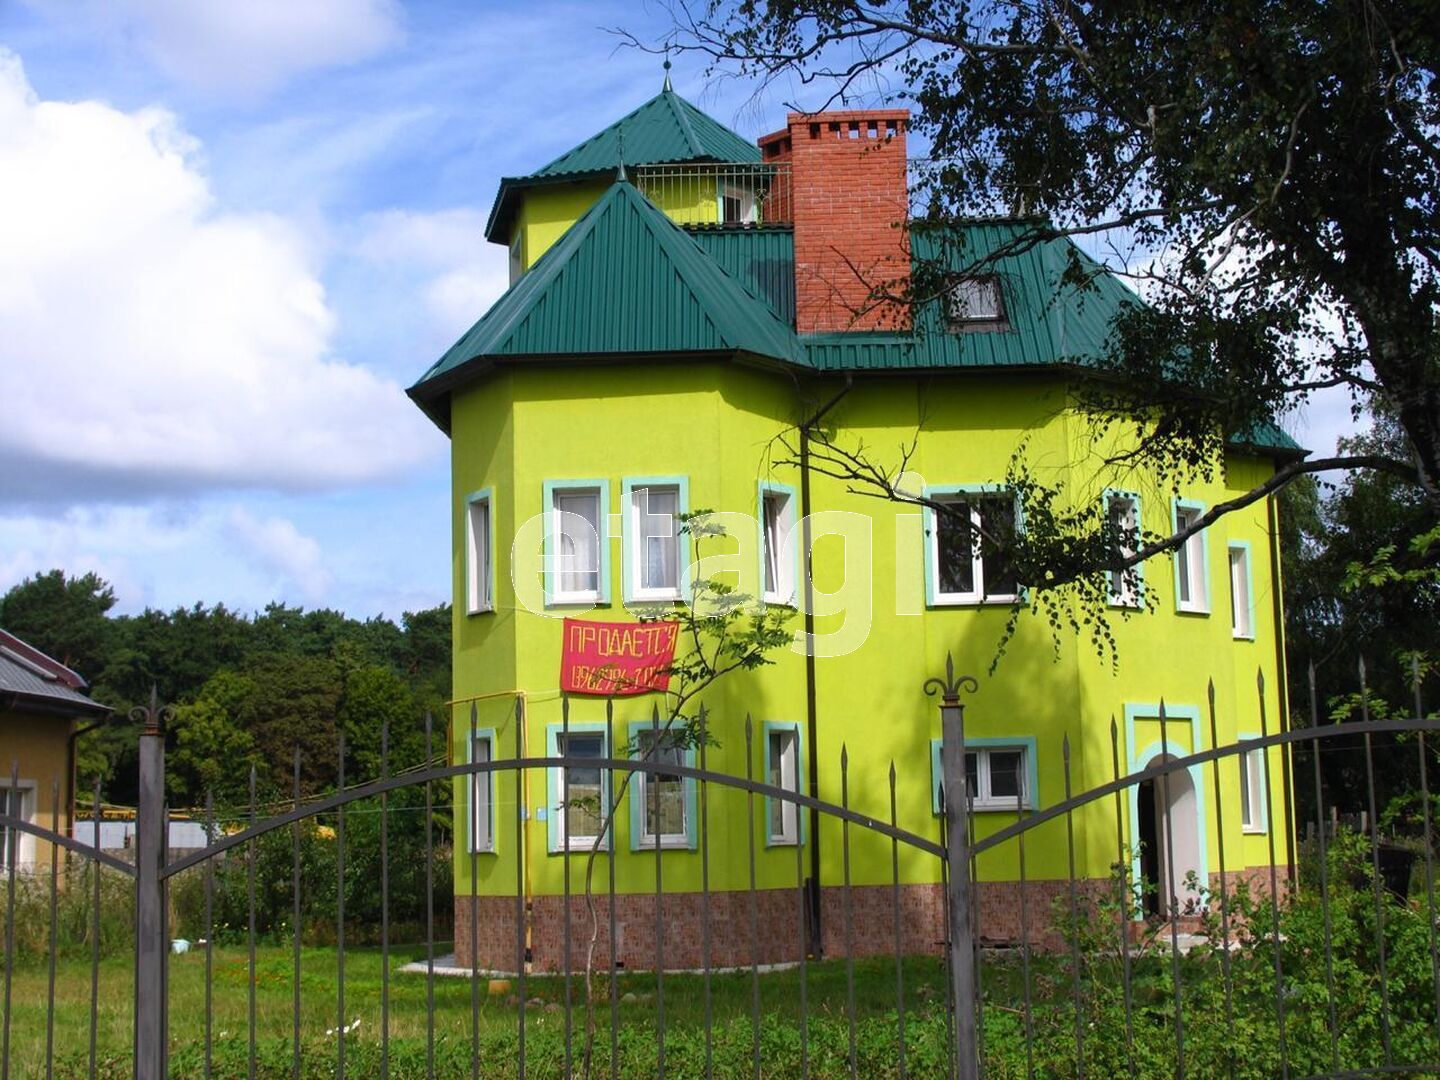 Купить дом 🏡 в Зеленограде недорого без посредников - продажа домов дешево на malino-v.ru